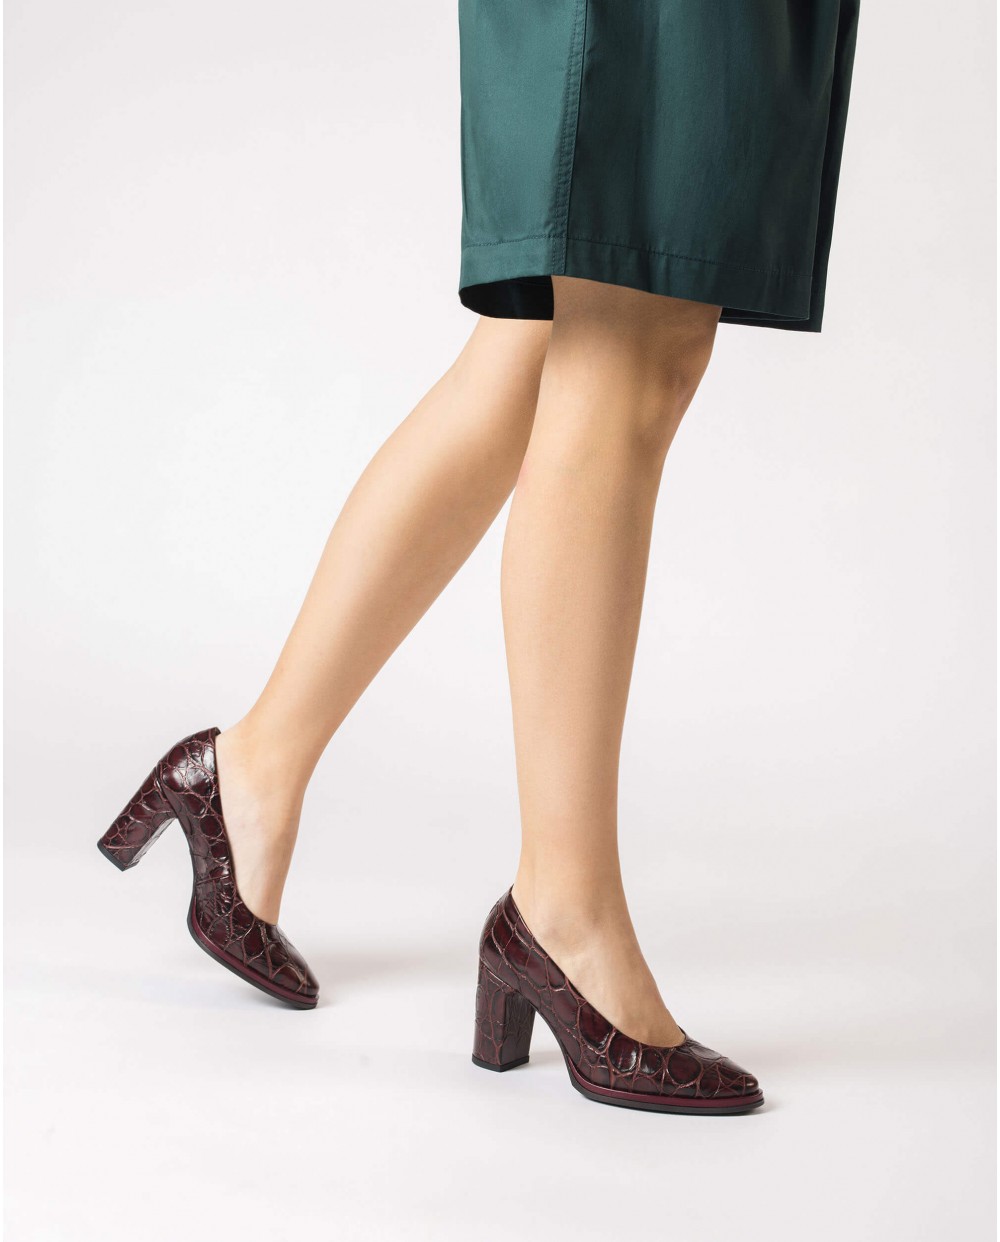 Wonders-Heels-Burgundy DENIS high-heeled shoe